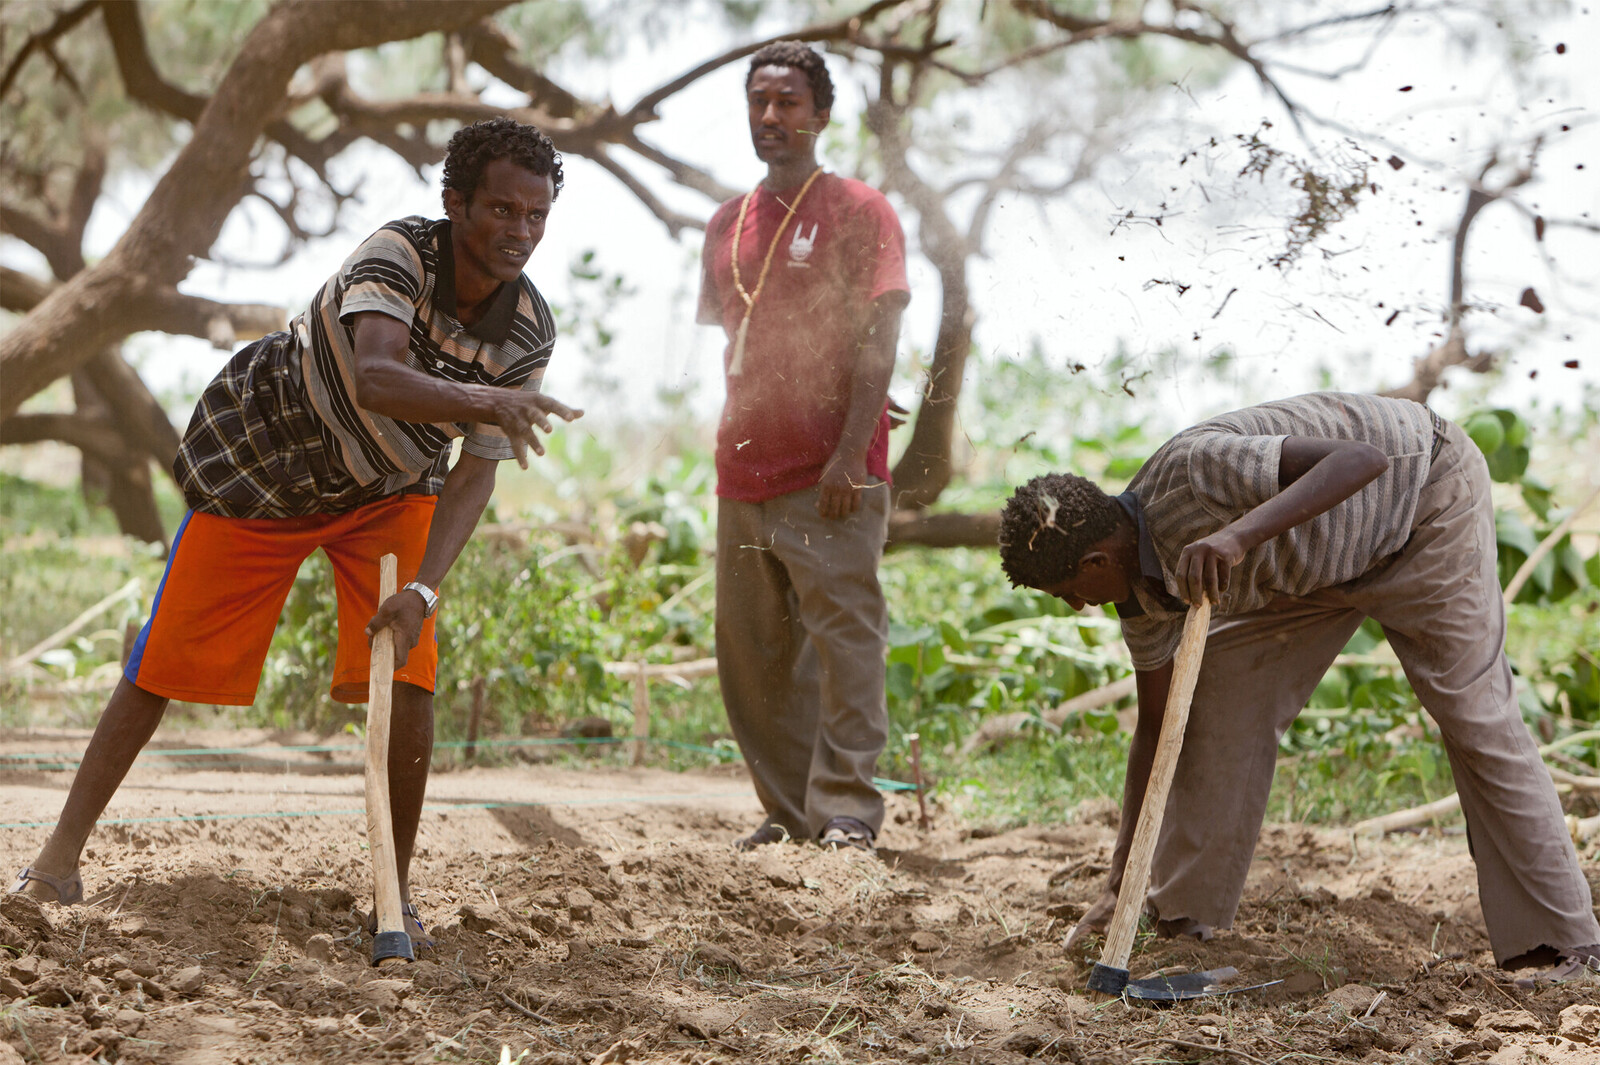 Männer in Afrika bei der Landwirtschaft